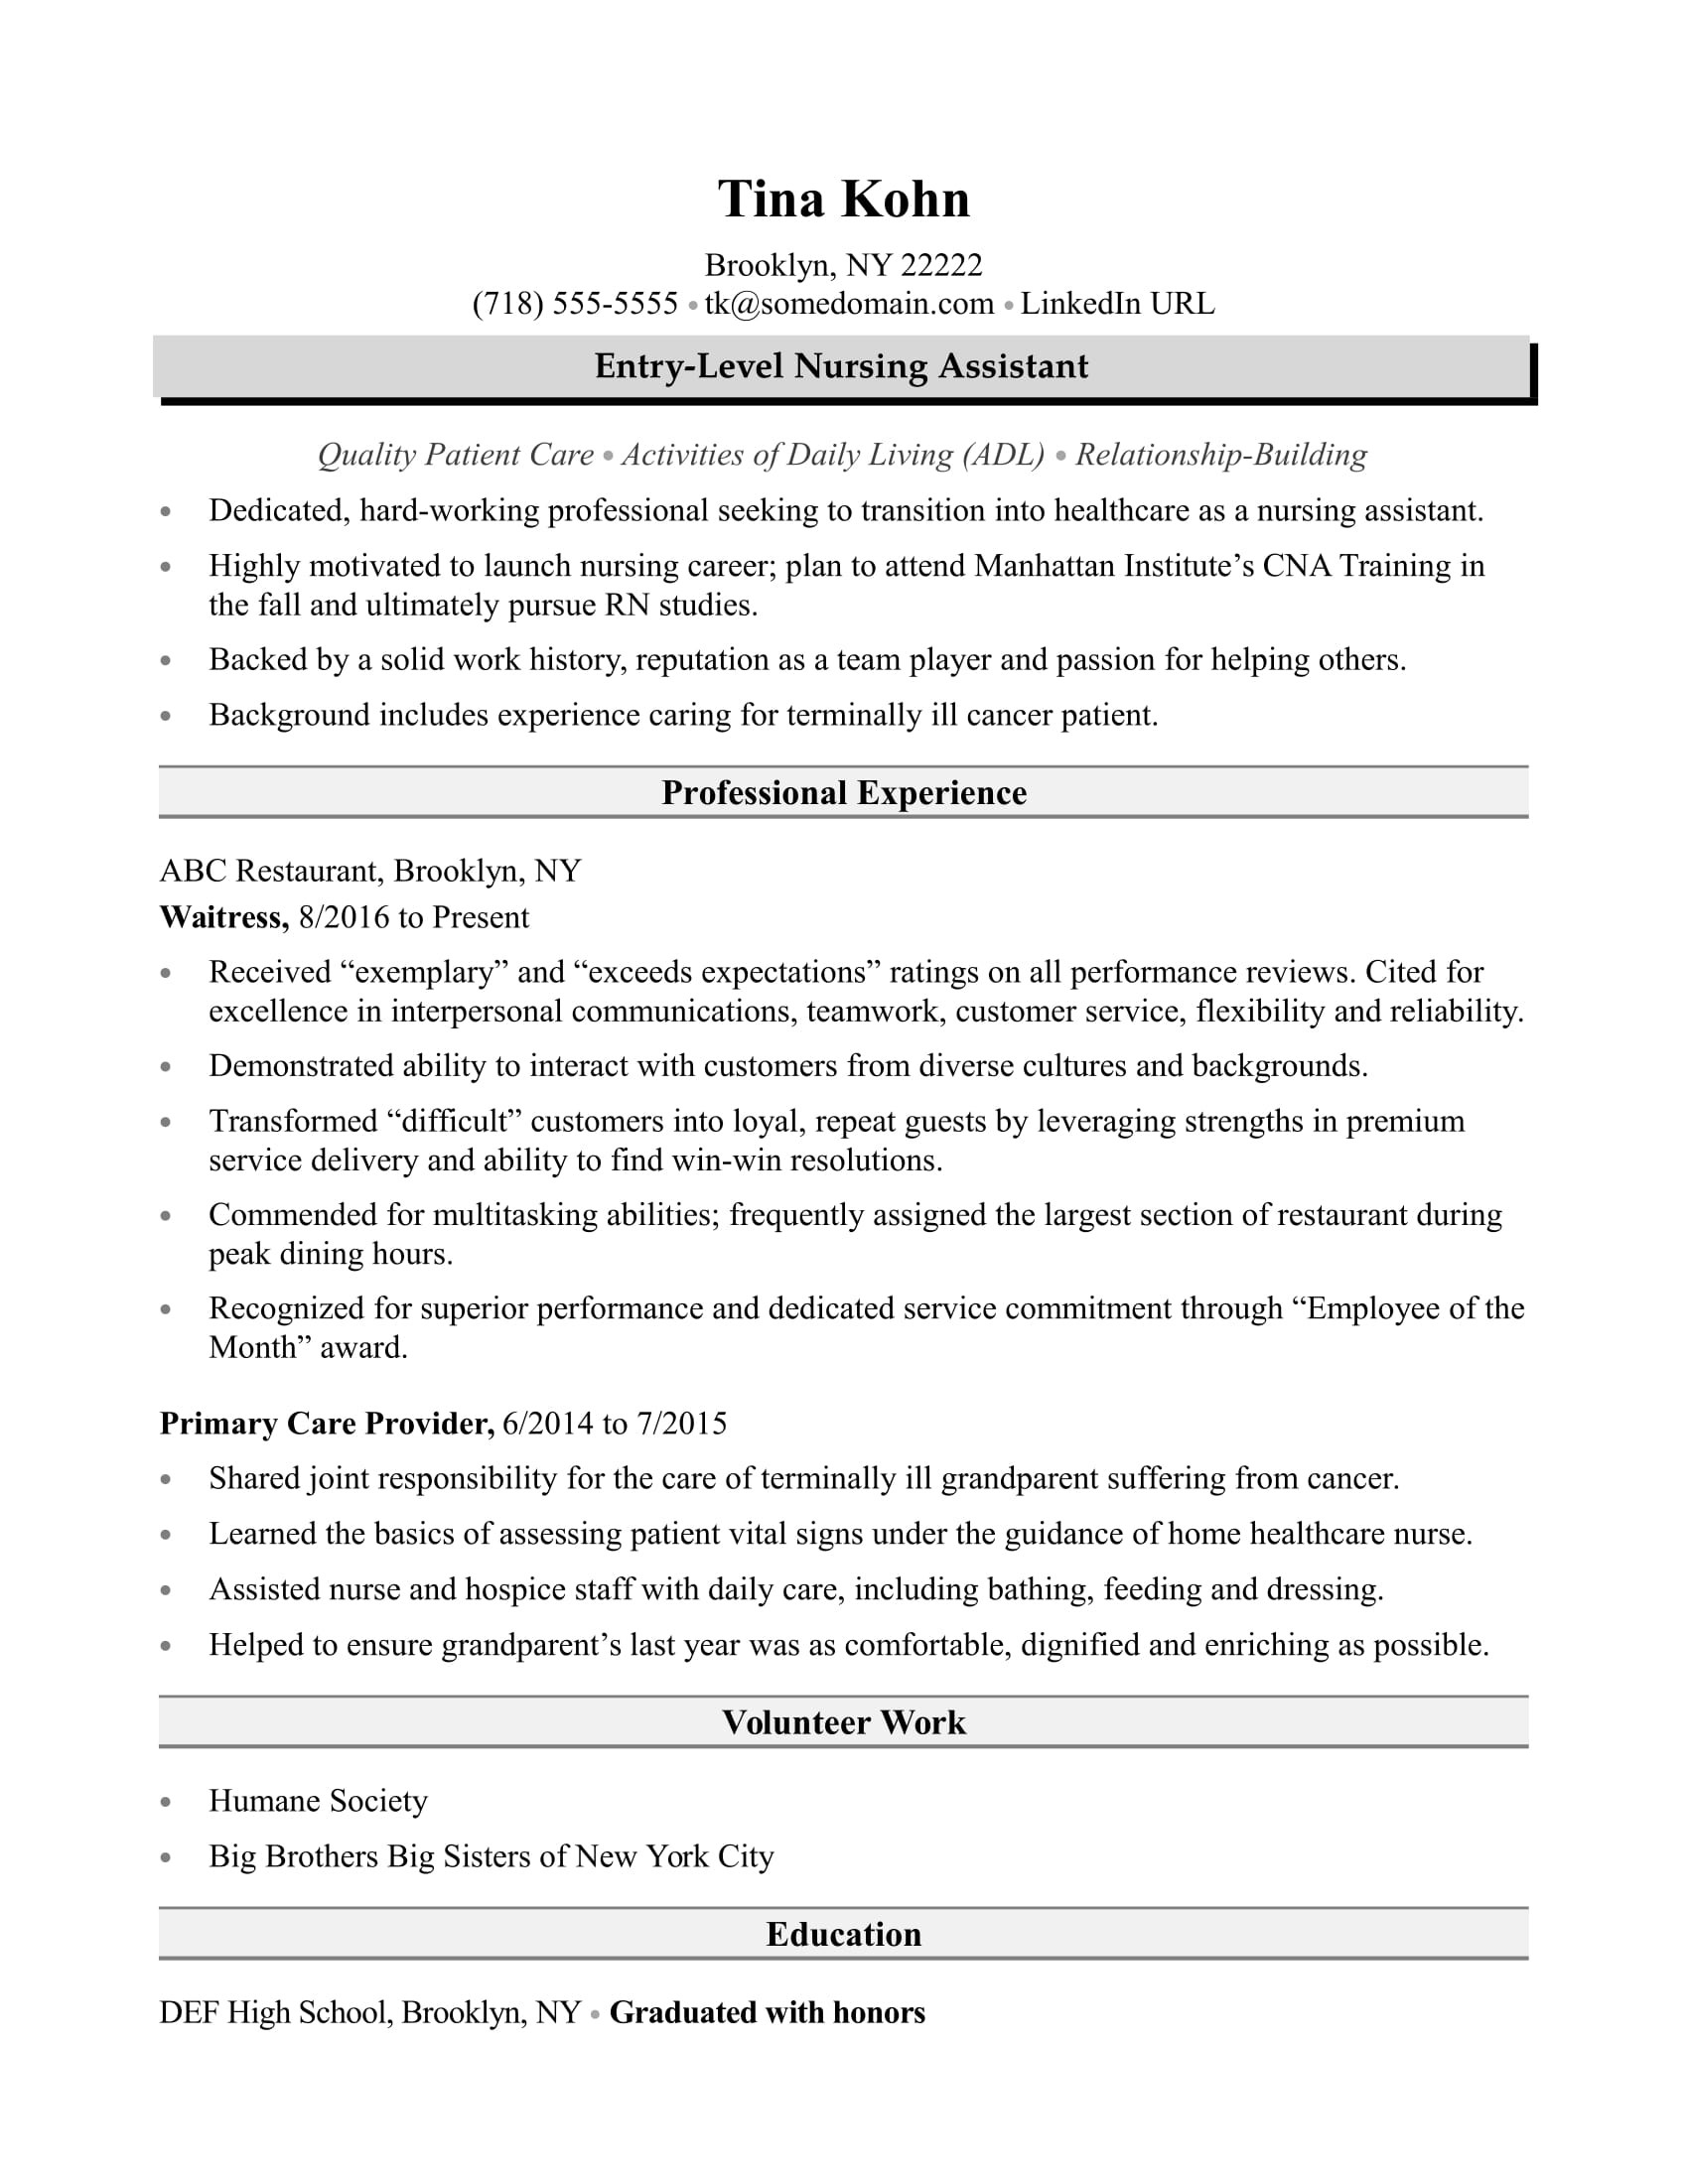 Sample Resume for Nursing assistant Position Nursing assistant Resume Sample